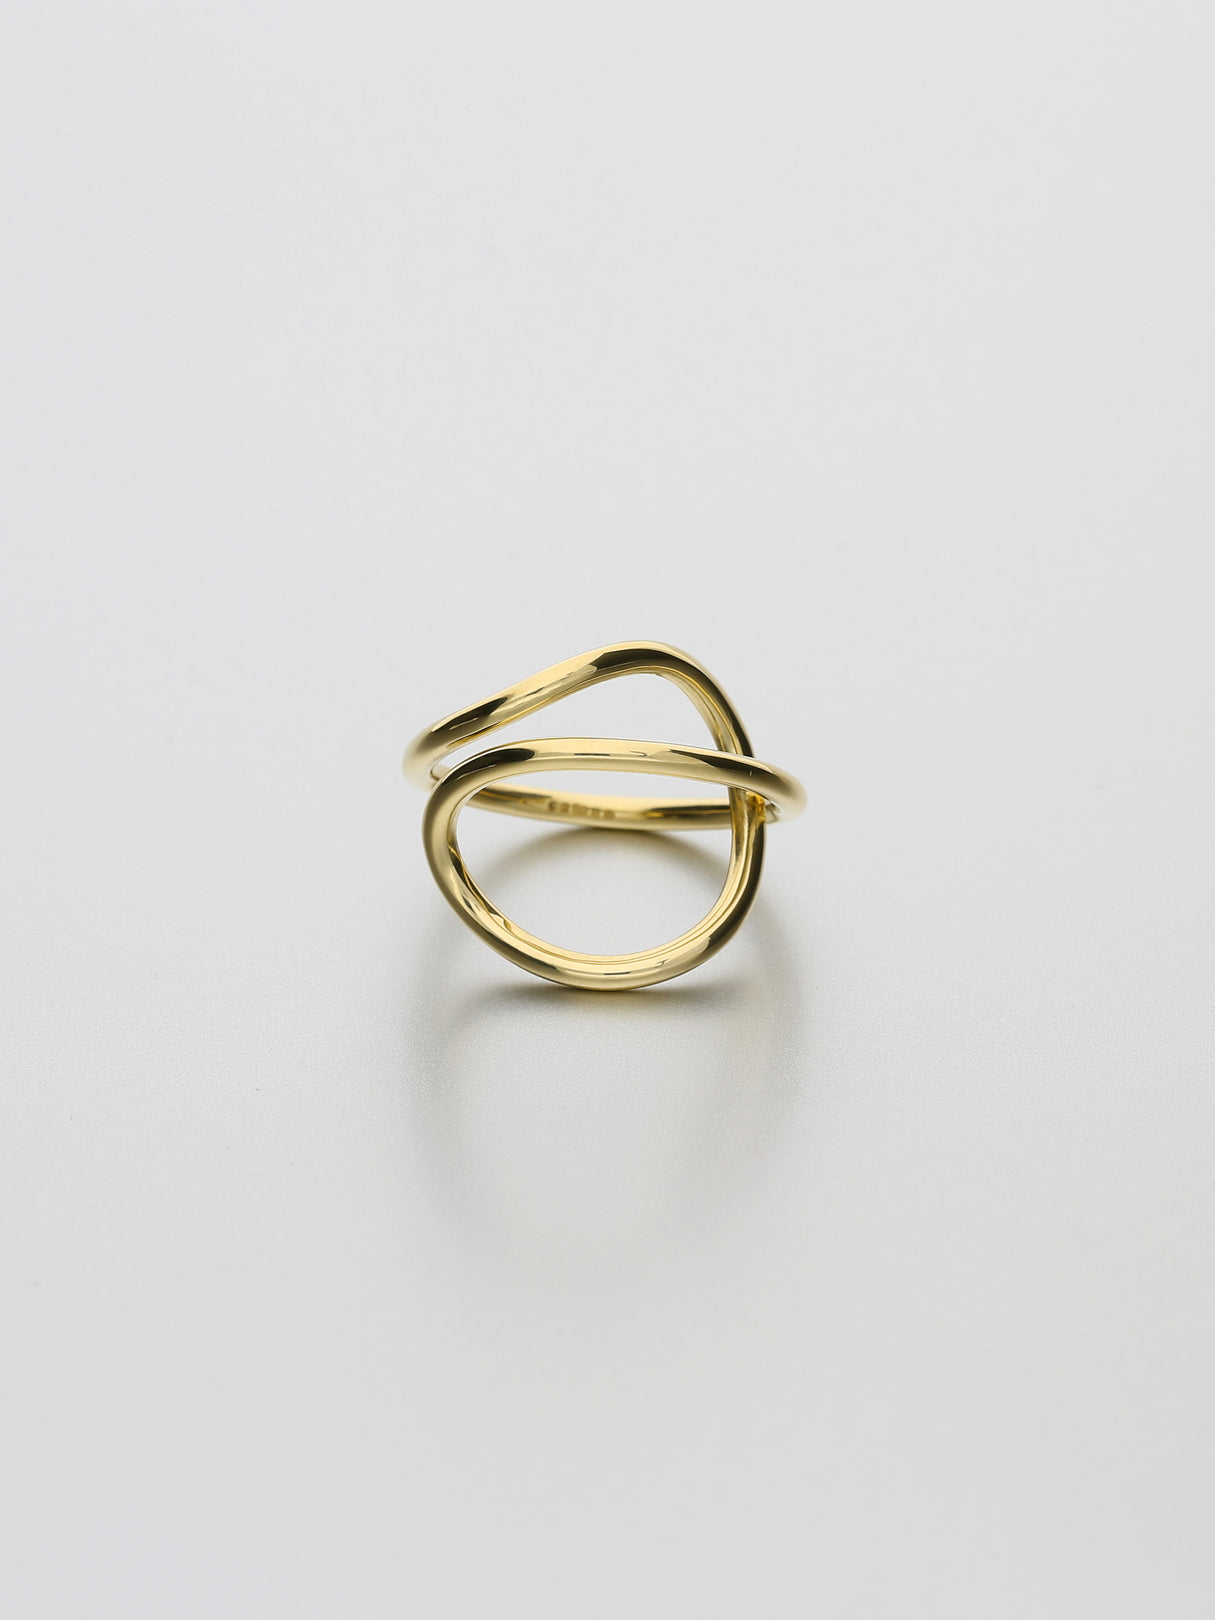 Aeon Ring, III Yellow gold